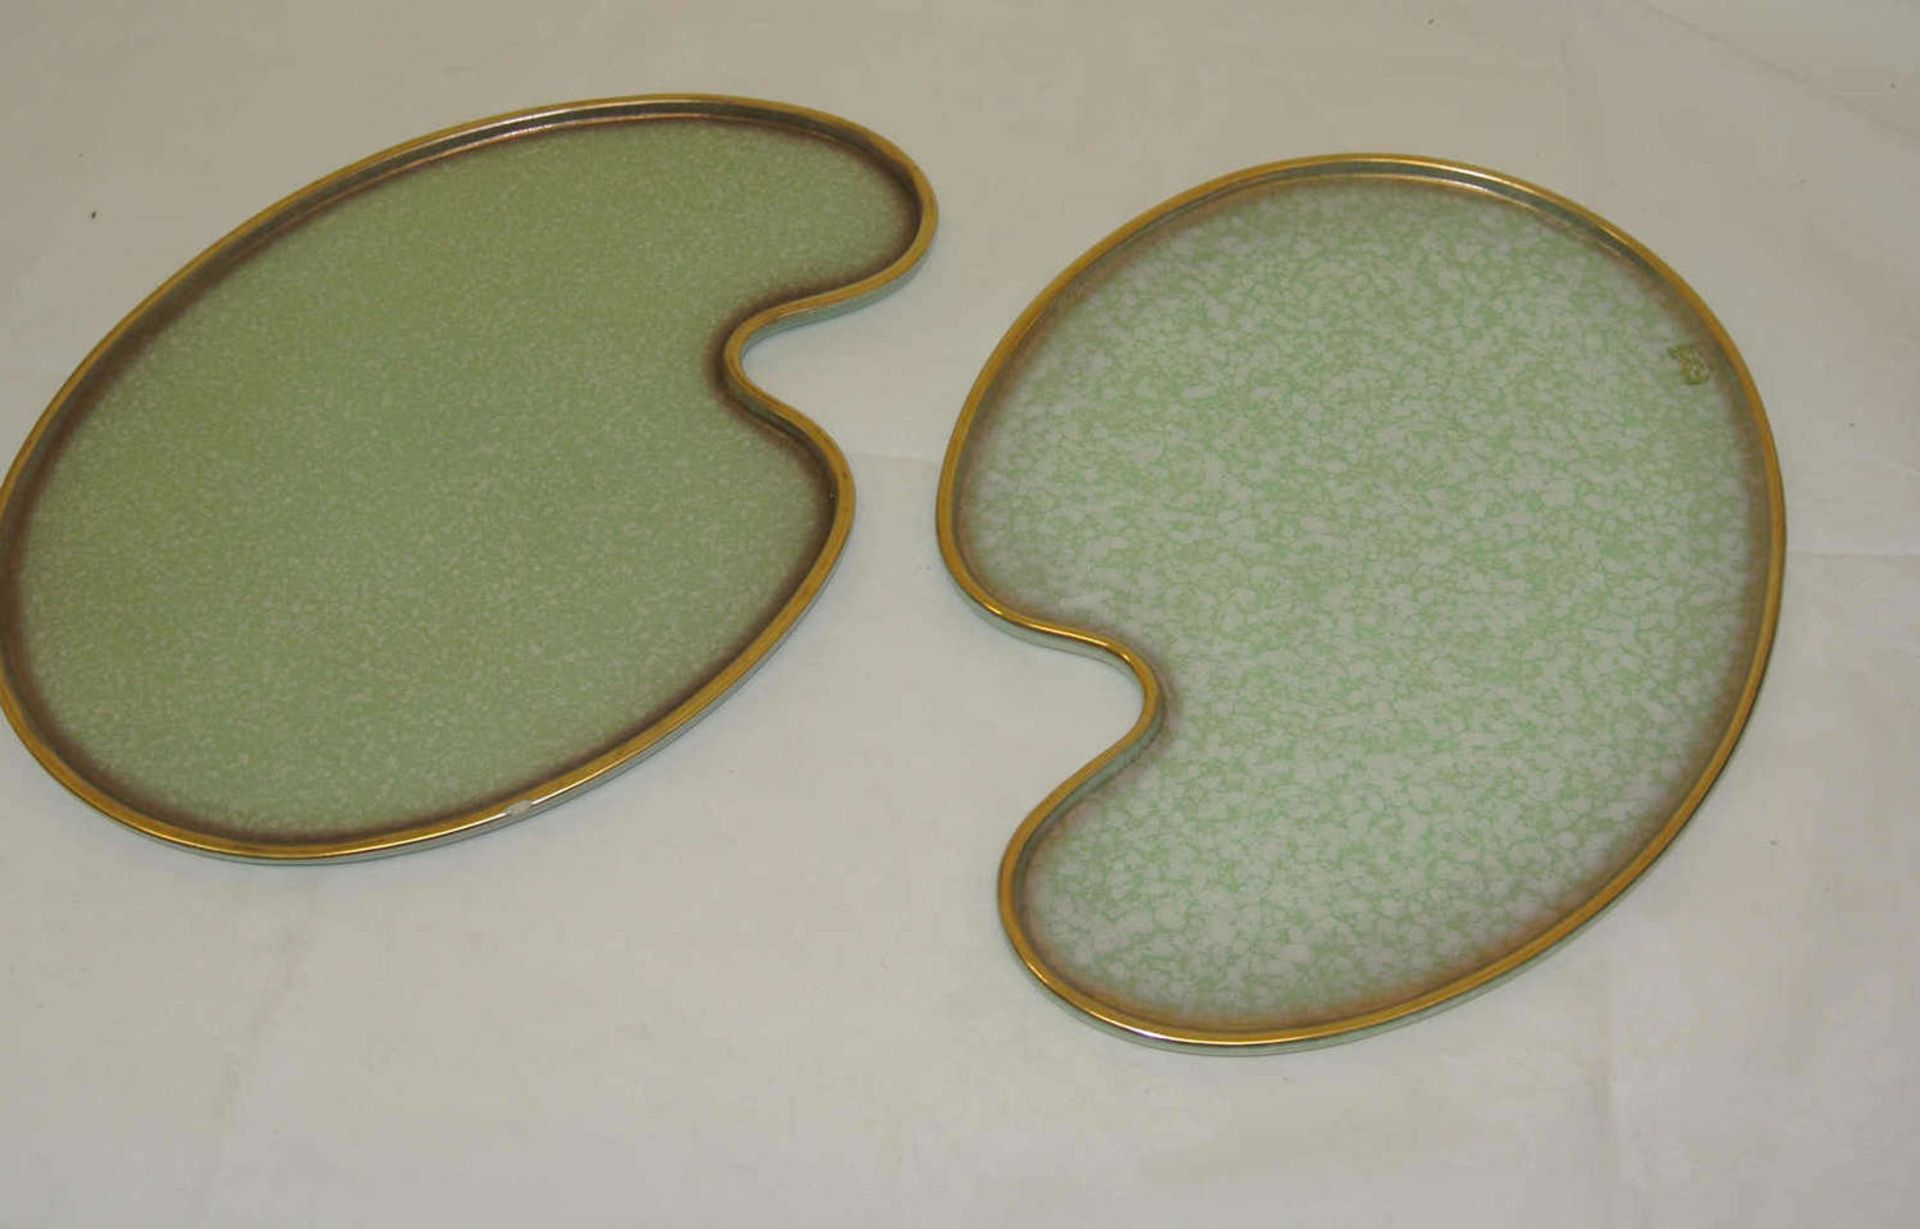 2 schöne Kuchenplatten in Nierenform, Modell Nr. 2906, 1 Platte mit Chip, sonst sehr guter